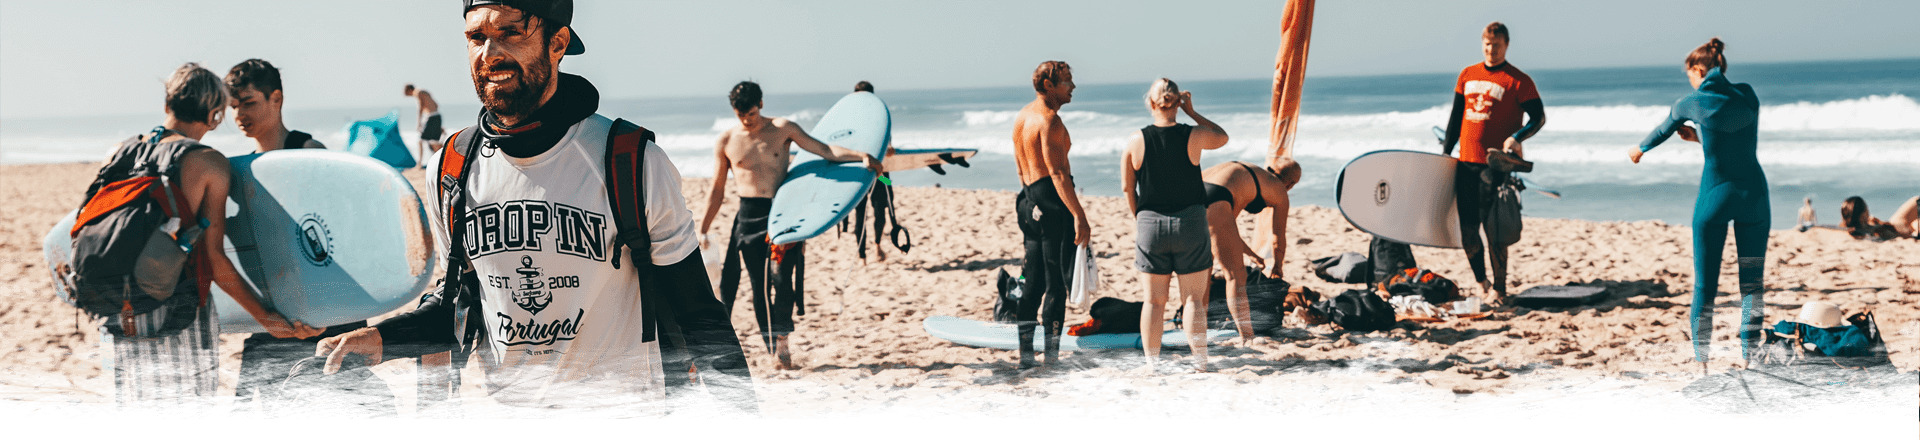 Drop-In-Surfcamp-Portugal-Head-Schmal-Surfkurse